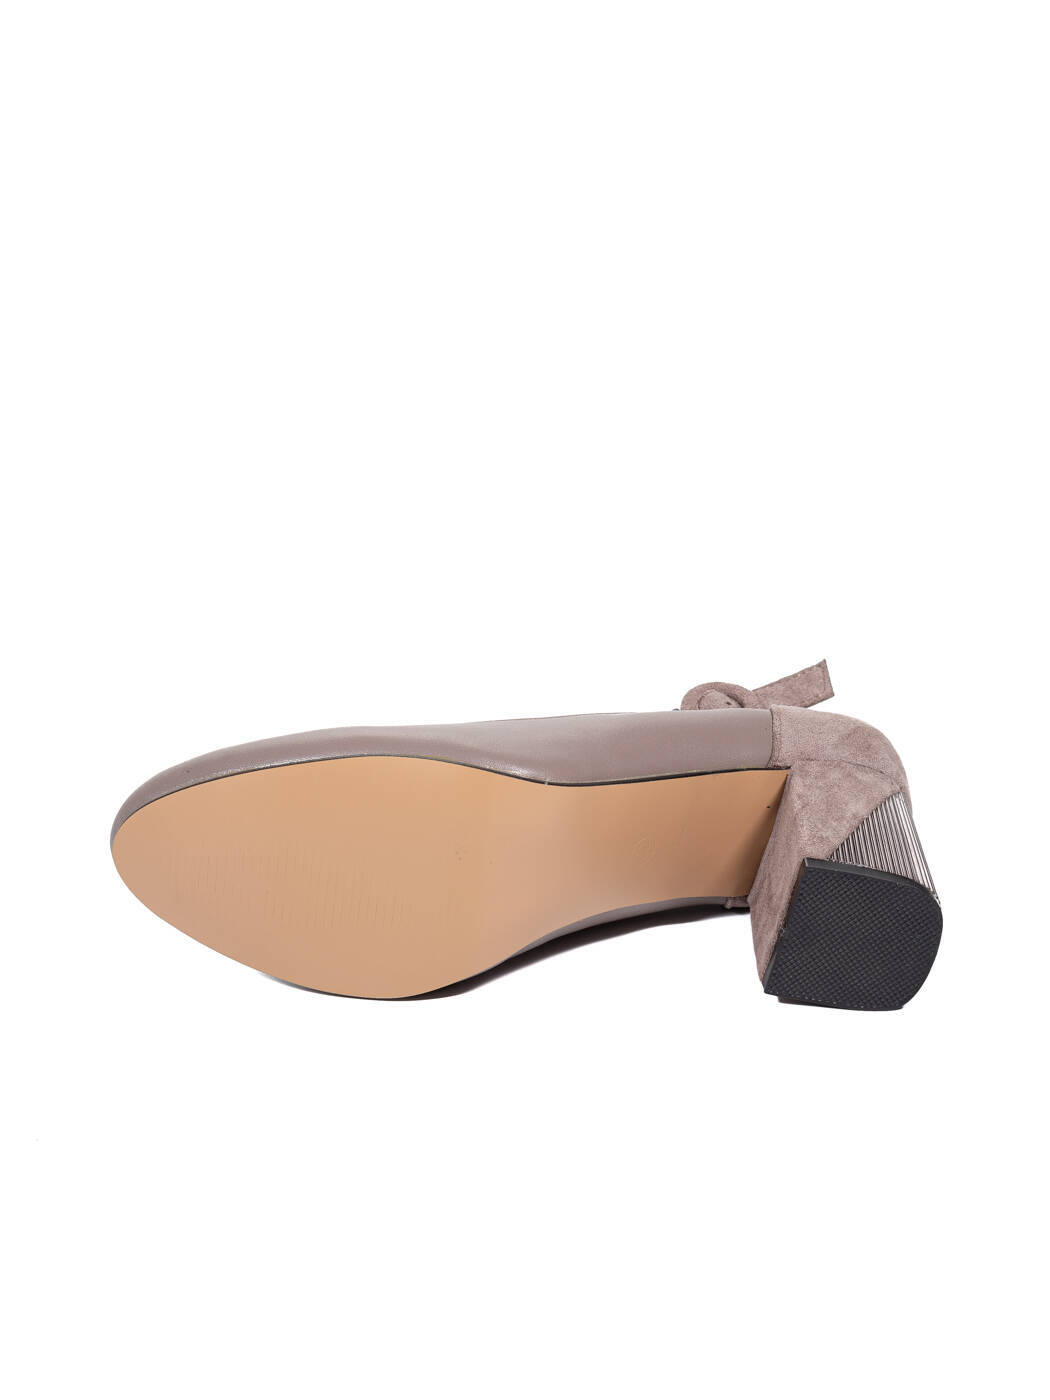 Туфли женские серые экокожа каблук устойчивый демисезон FM вид 2